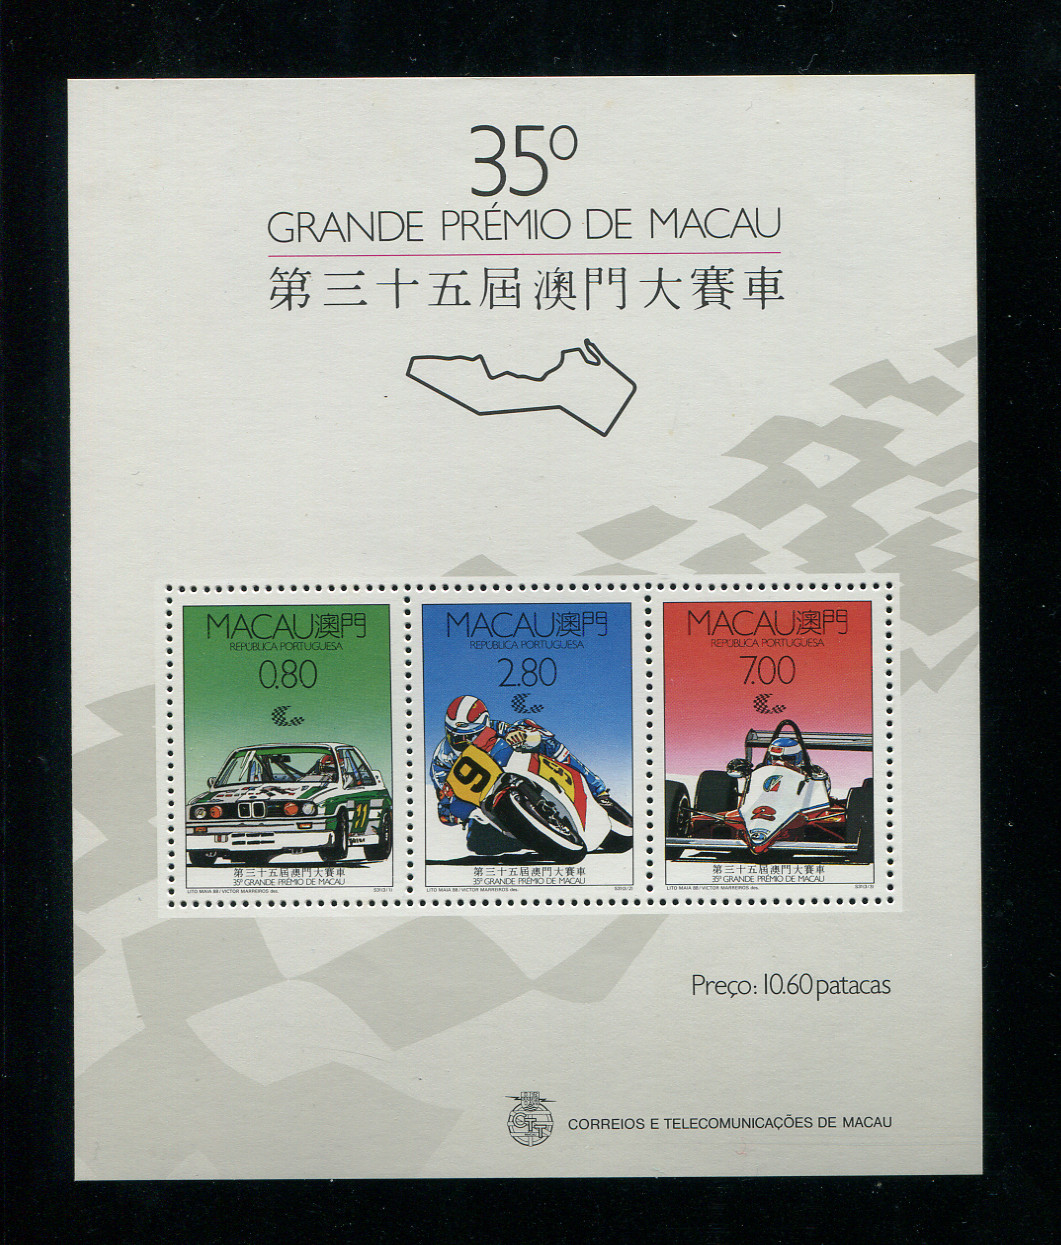 1988 - Bloco nº10. Circuito de Macau de Automobilismo. Bloco novo SEM CHARNEIRA (**) e com goma original. Em boas condições.